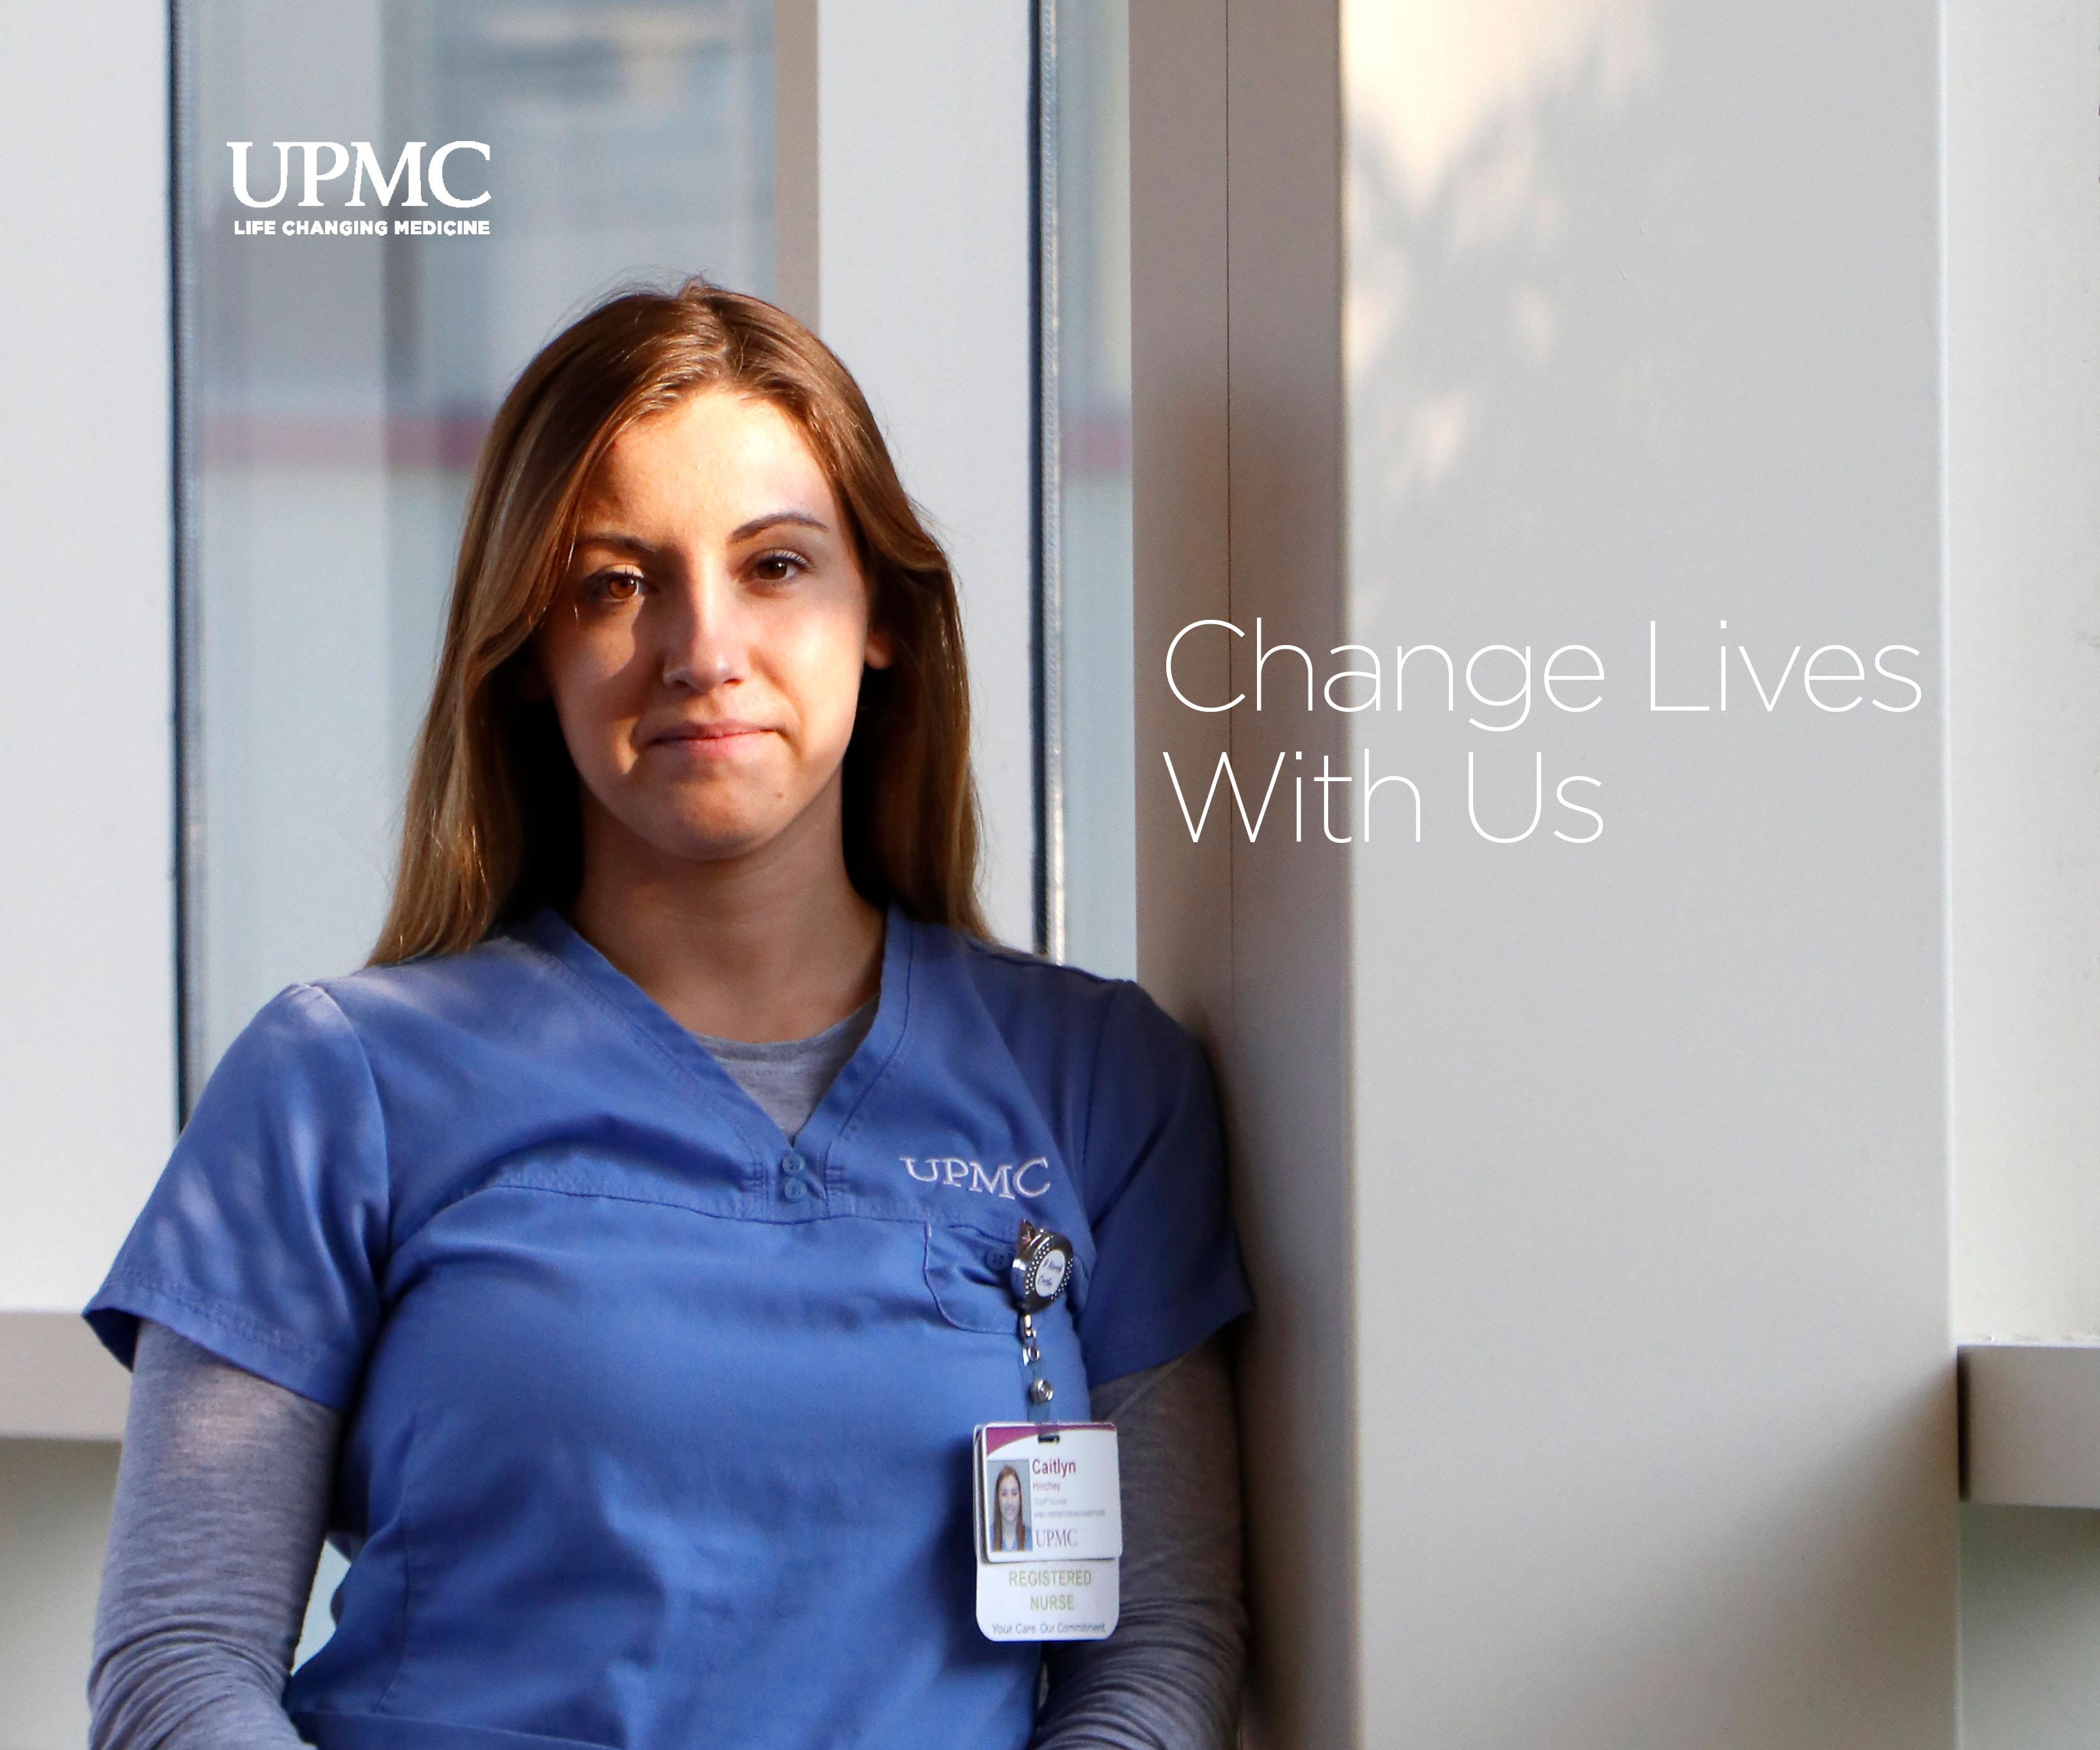 UPMC Nursing - Change Lives With Us